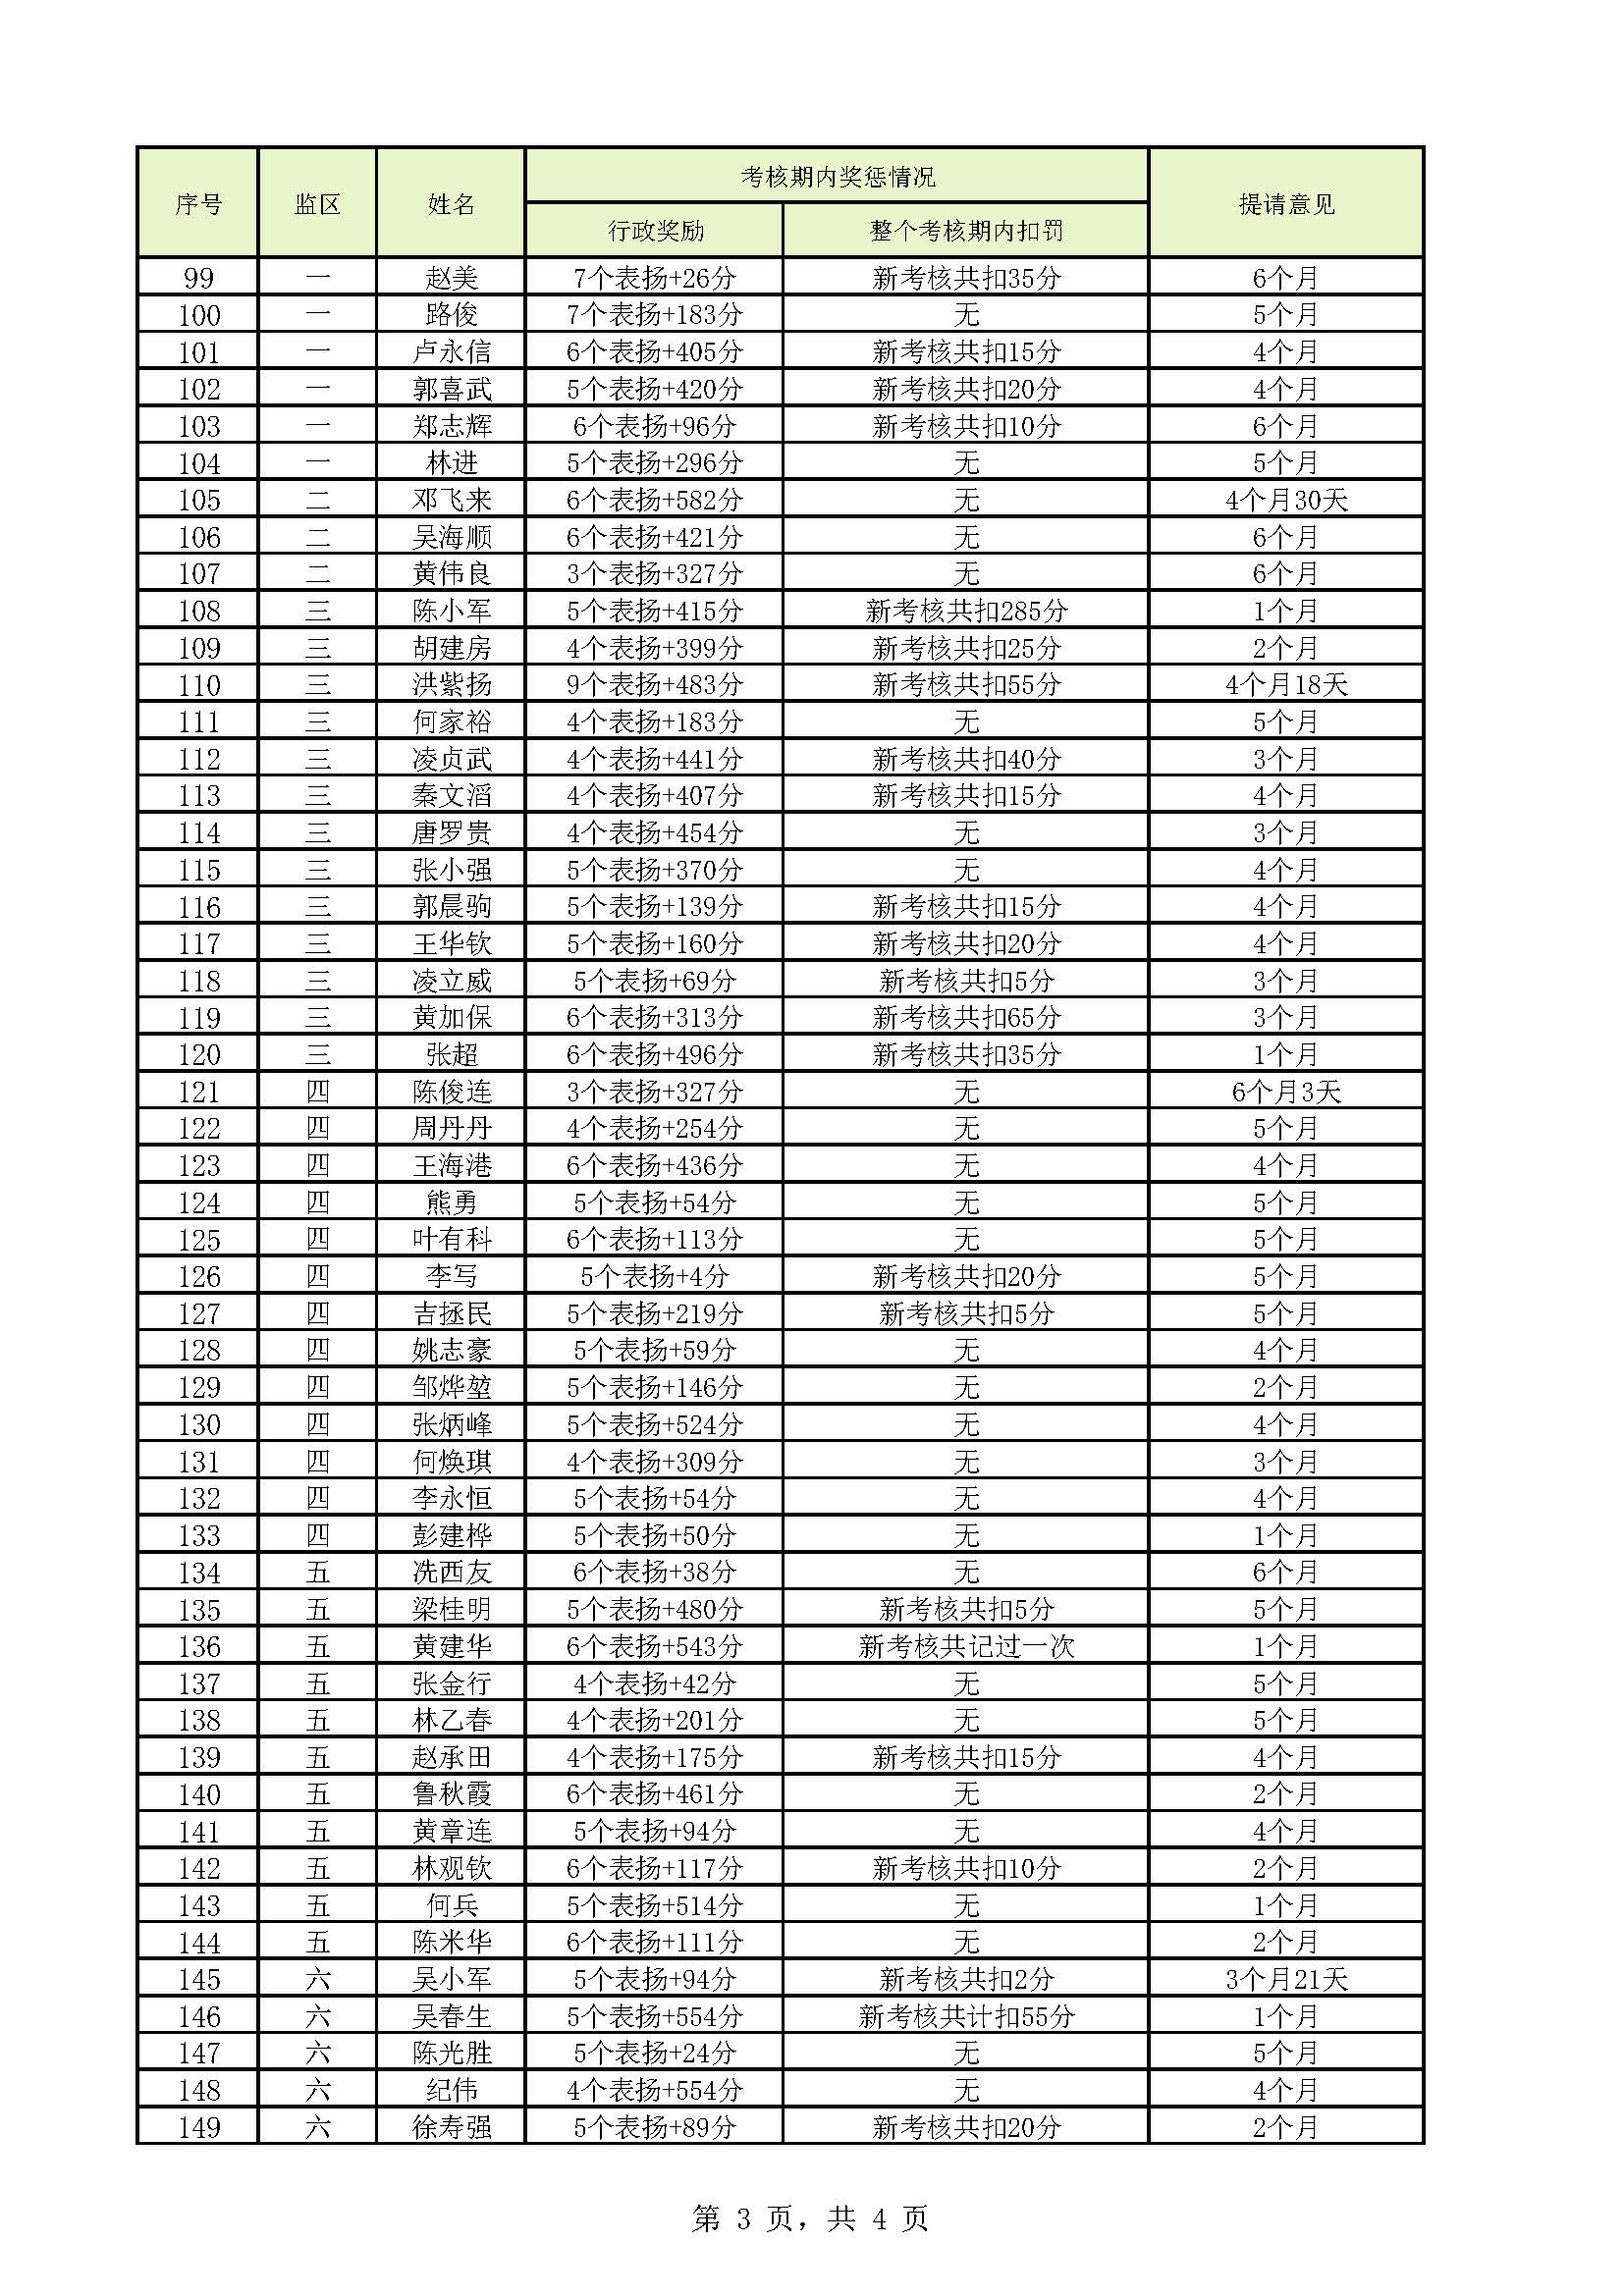 明康监狱2021年第四批罪犯减刑（假释）提请榜（公示）_页面_3.jpg